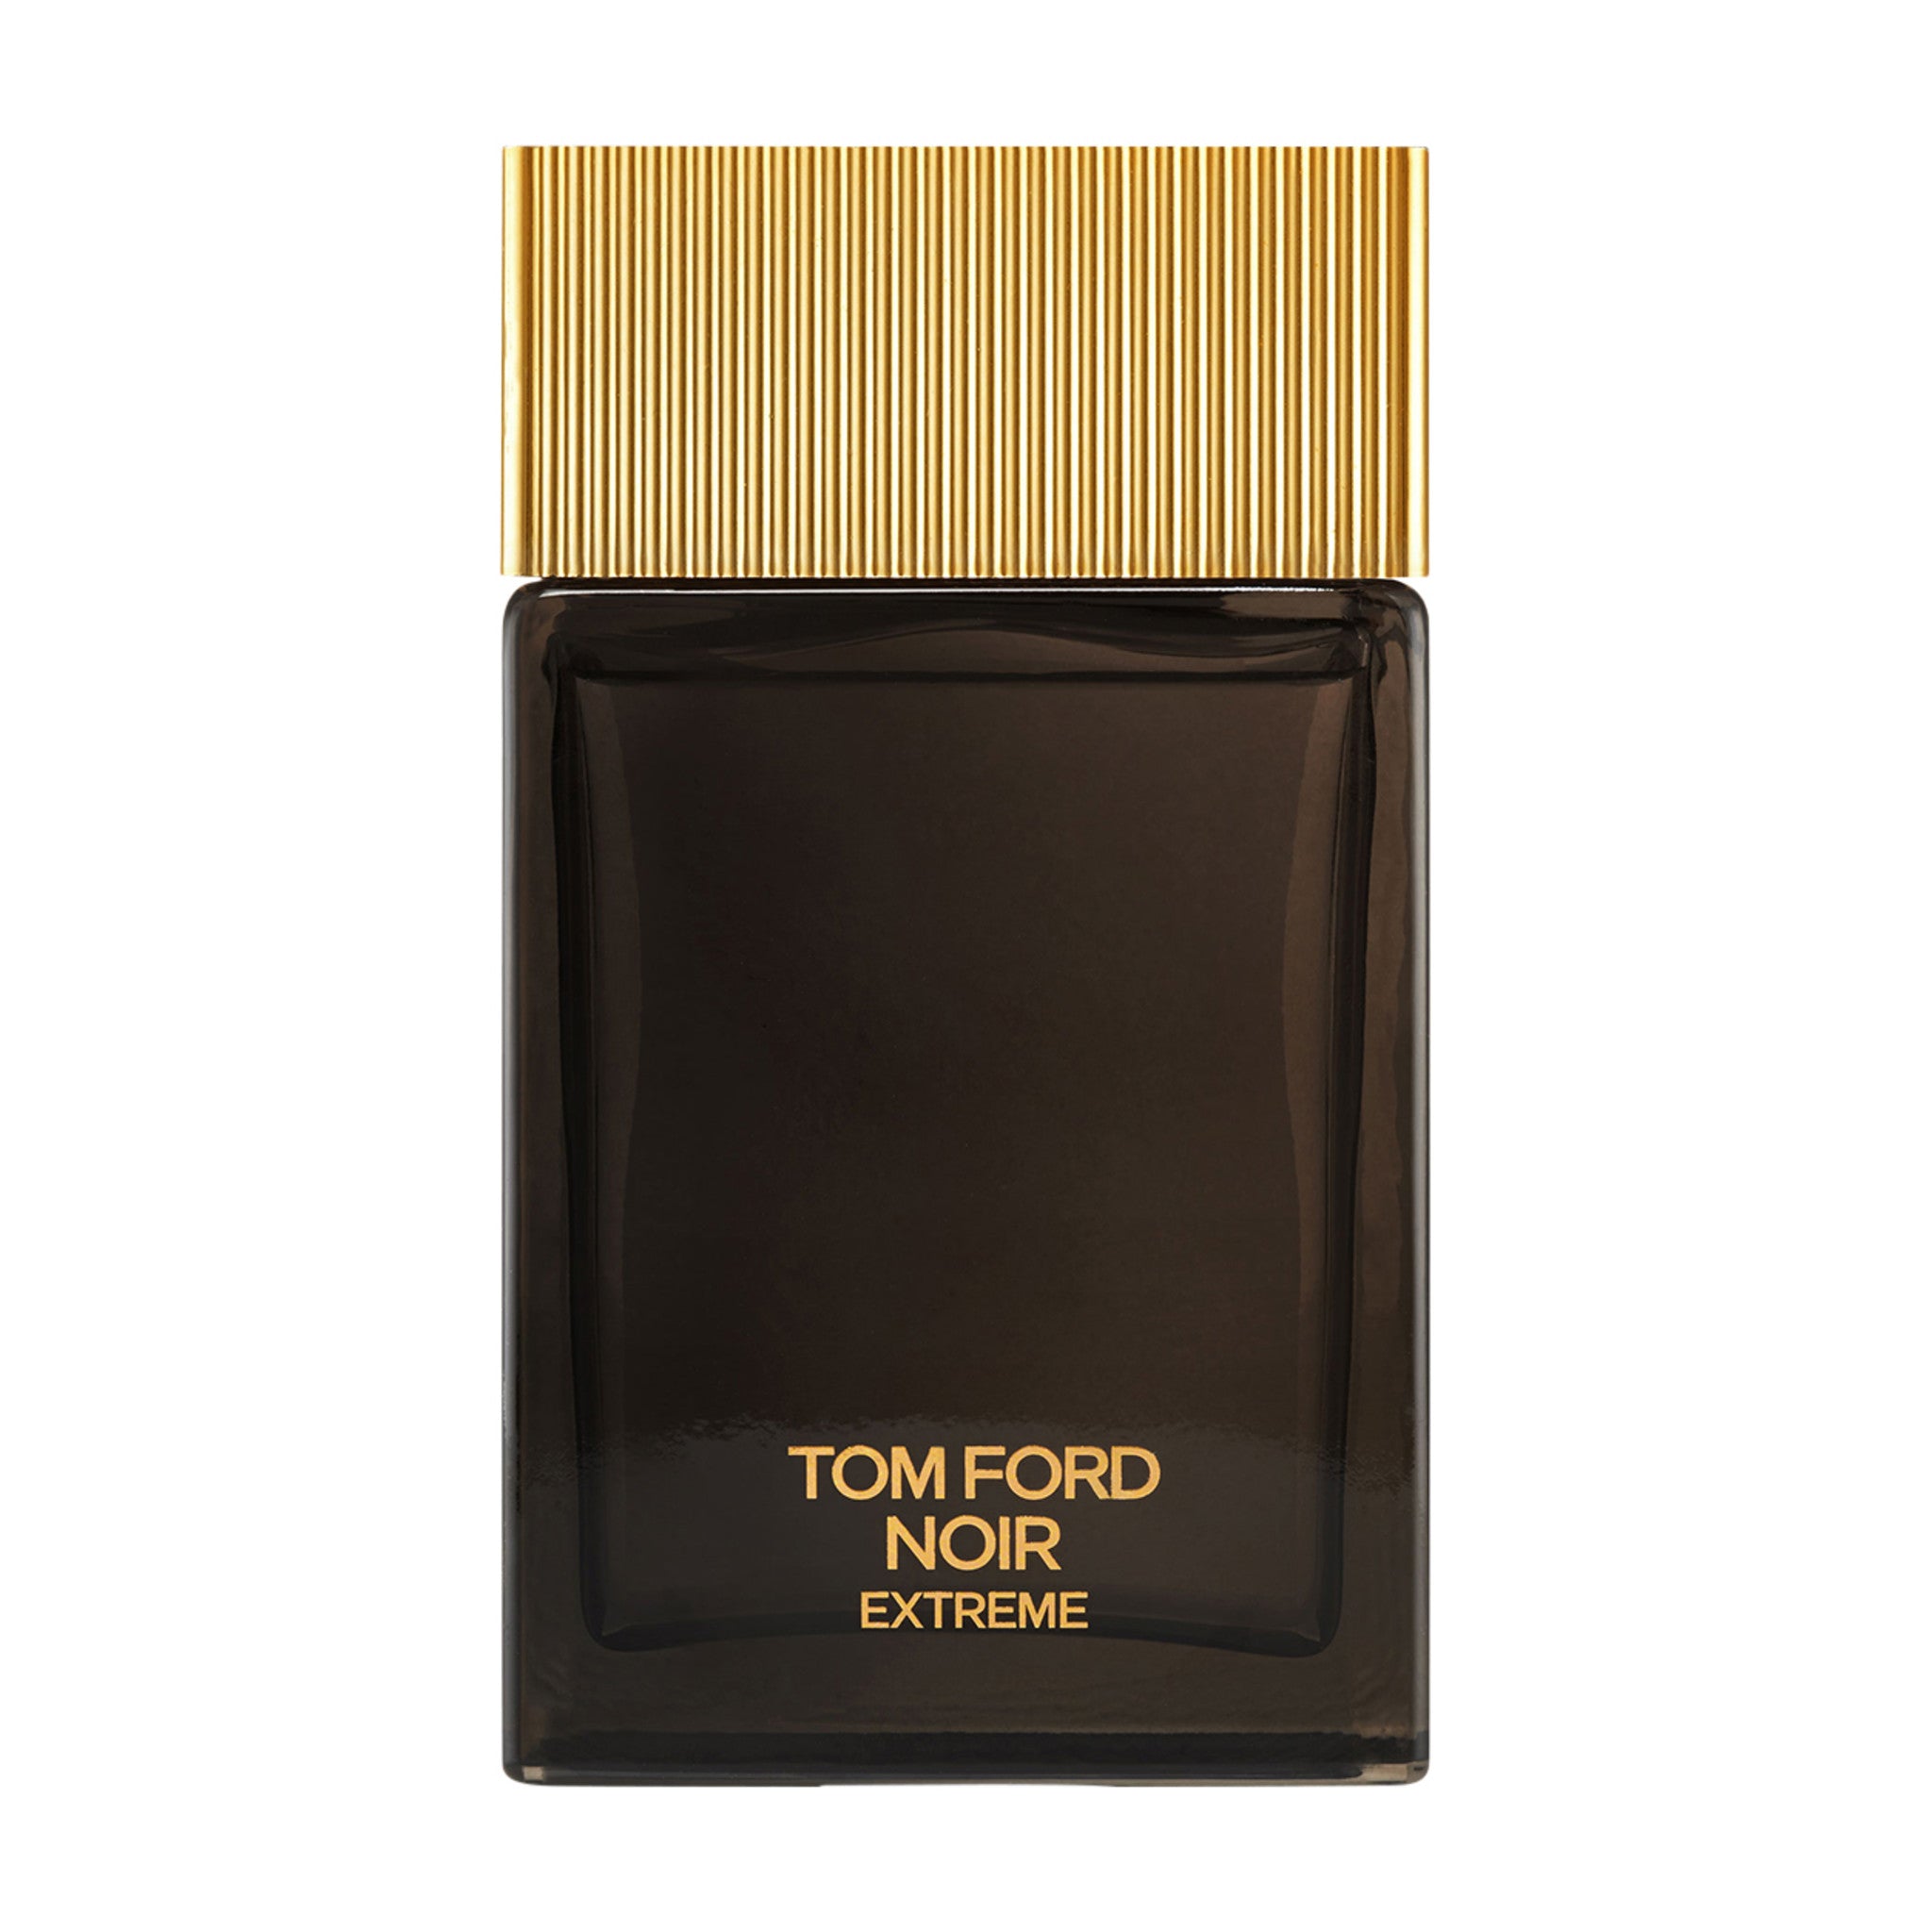 Tom Ford Noir Extreme Eau de Parfum Size variant: 3.4 oz main image.